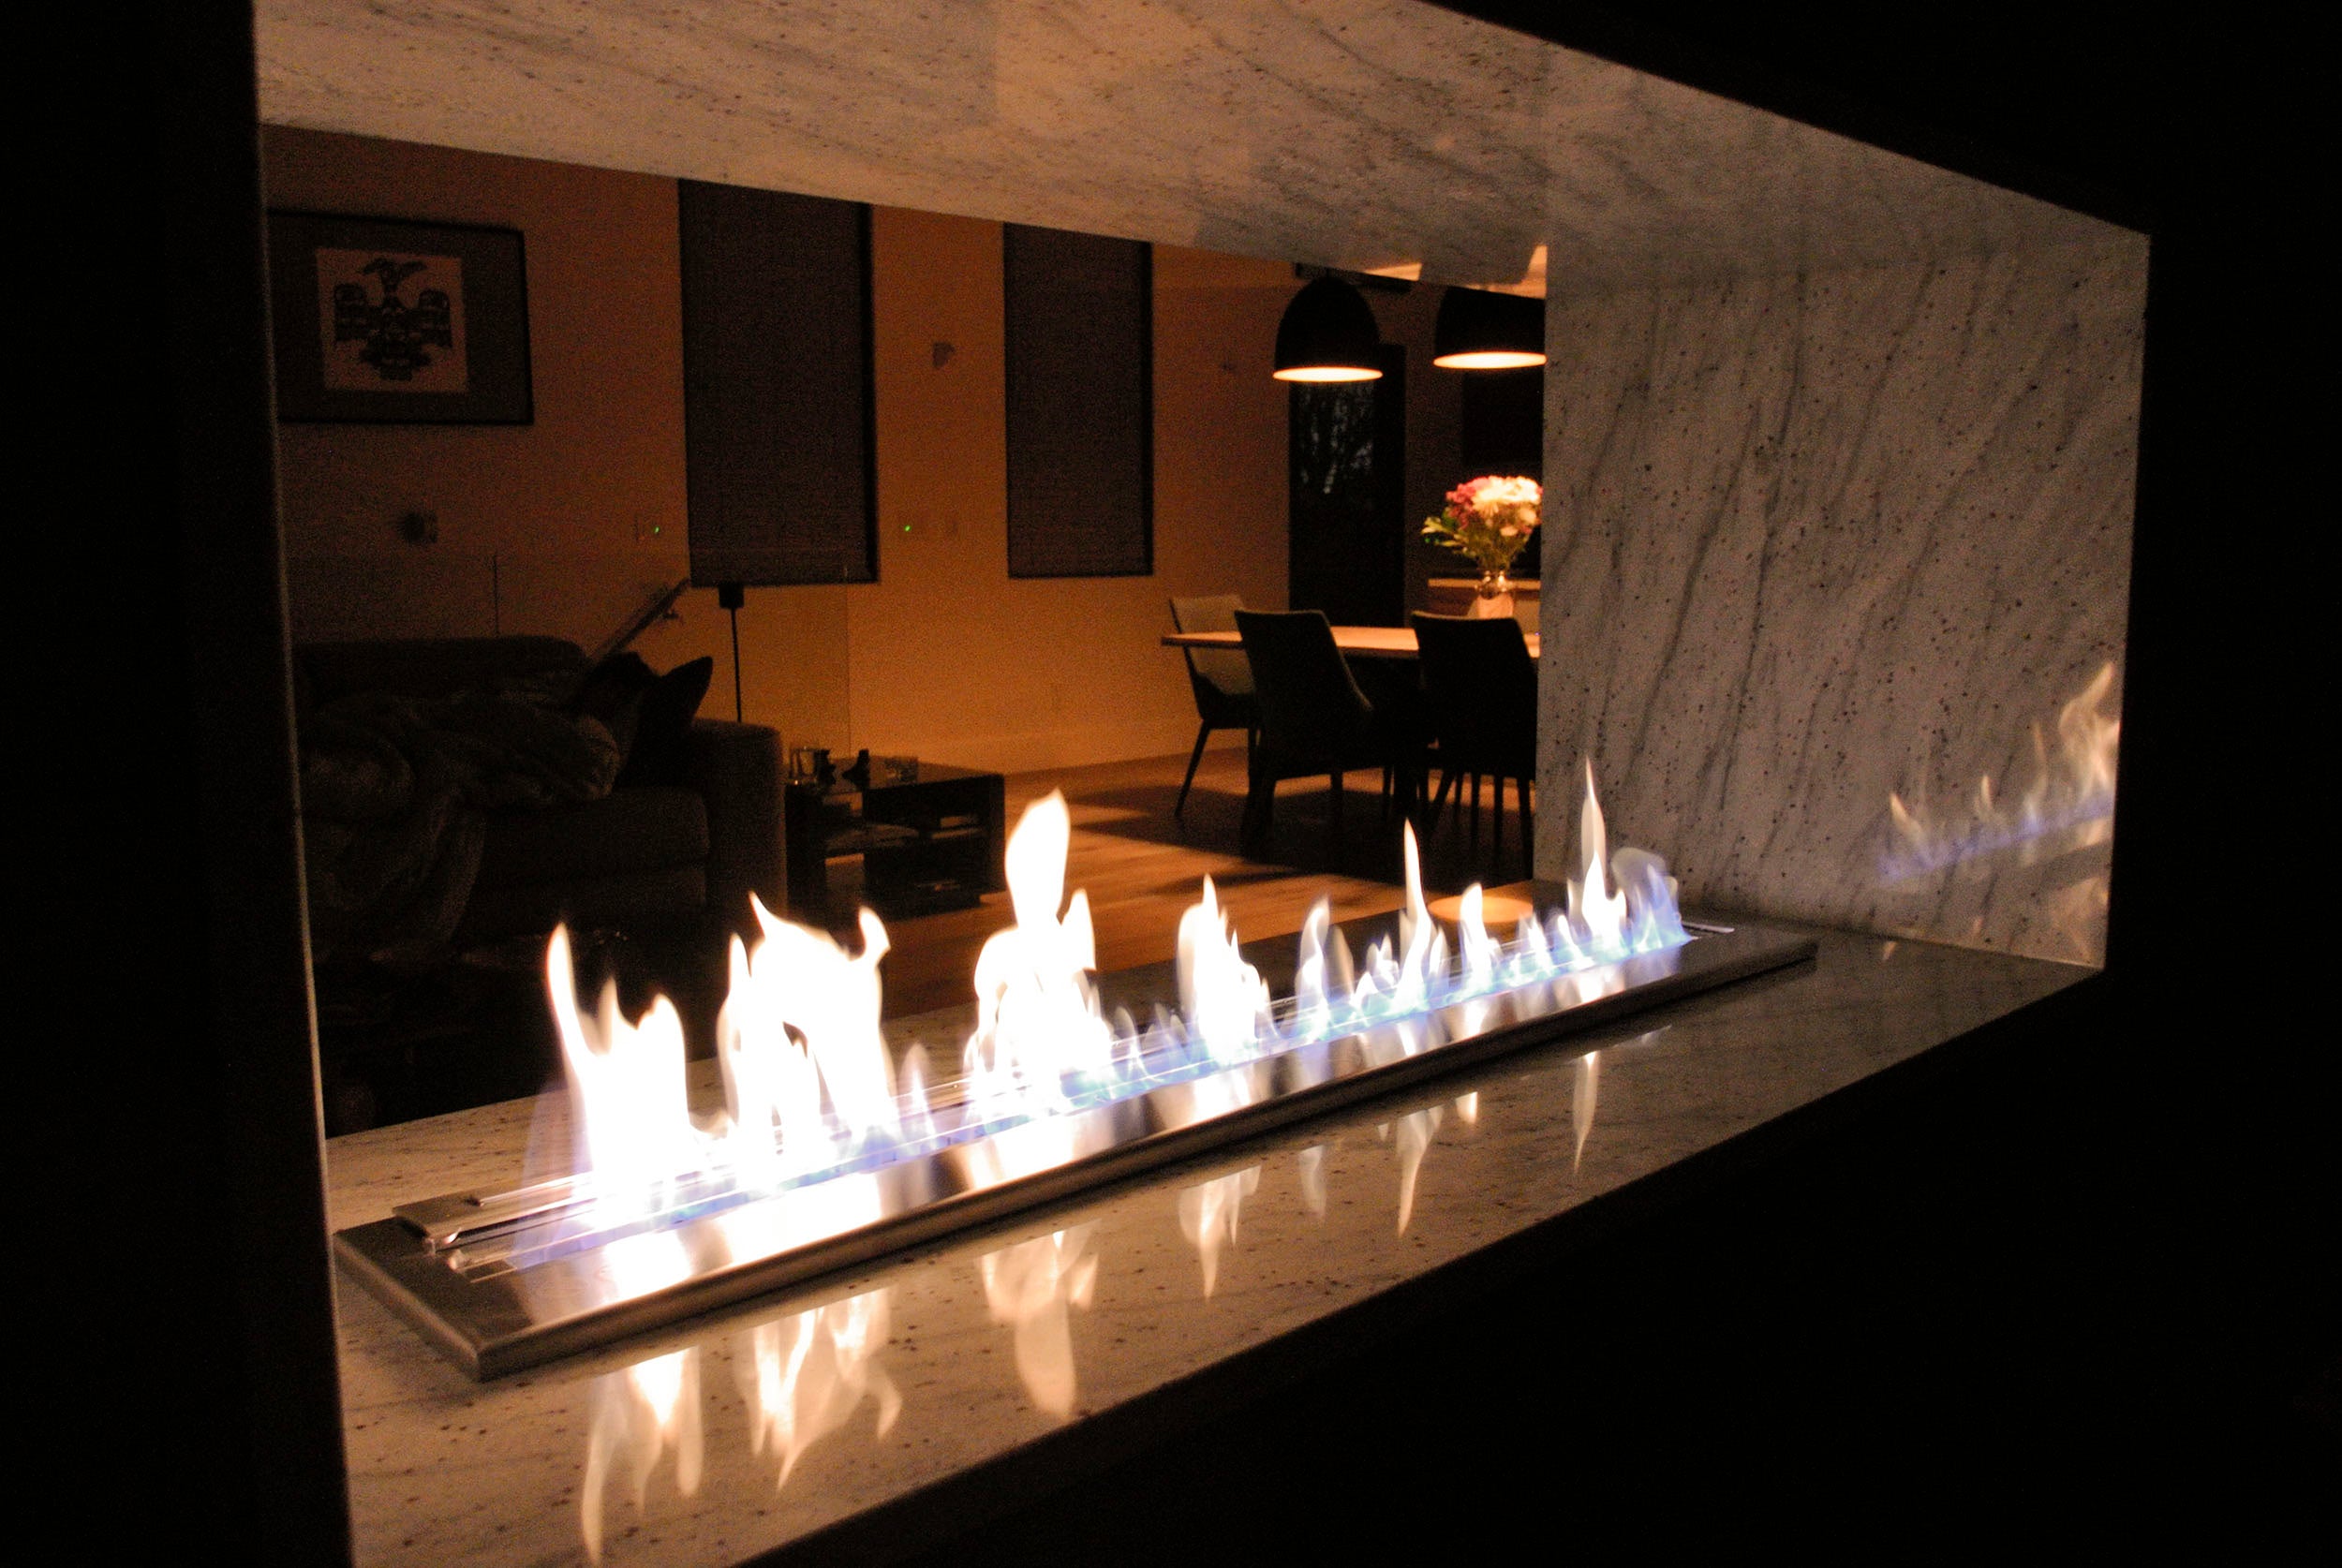 A beautiful ethanol fireplace at nighttime